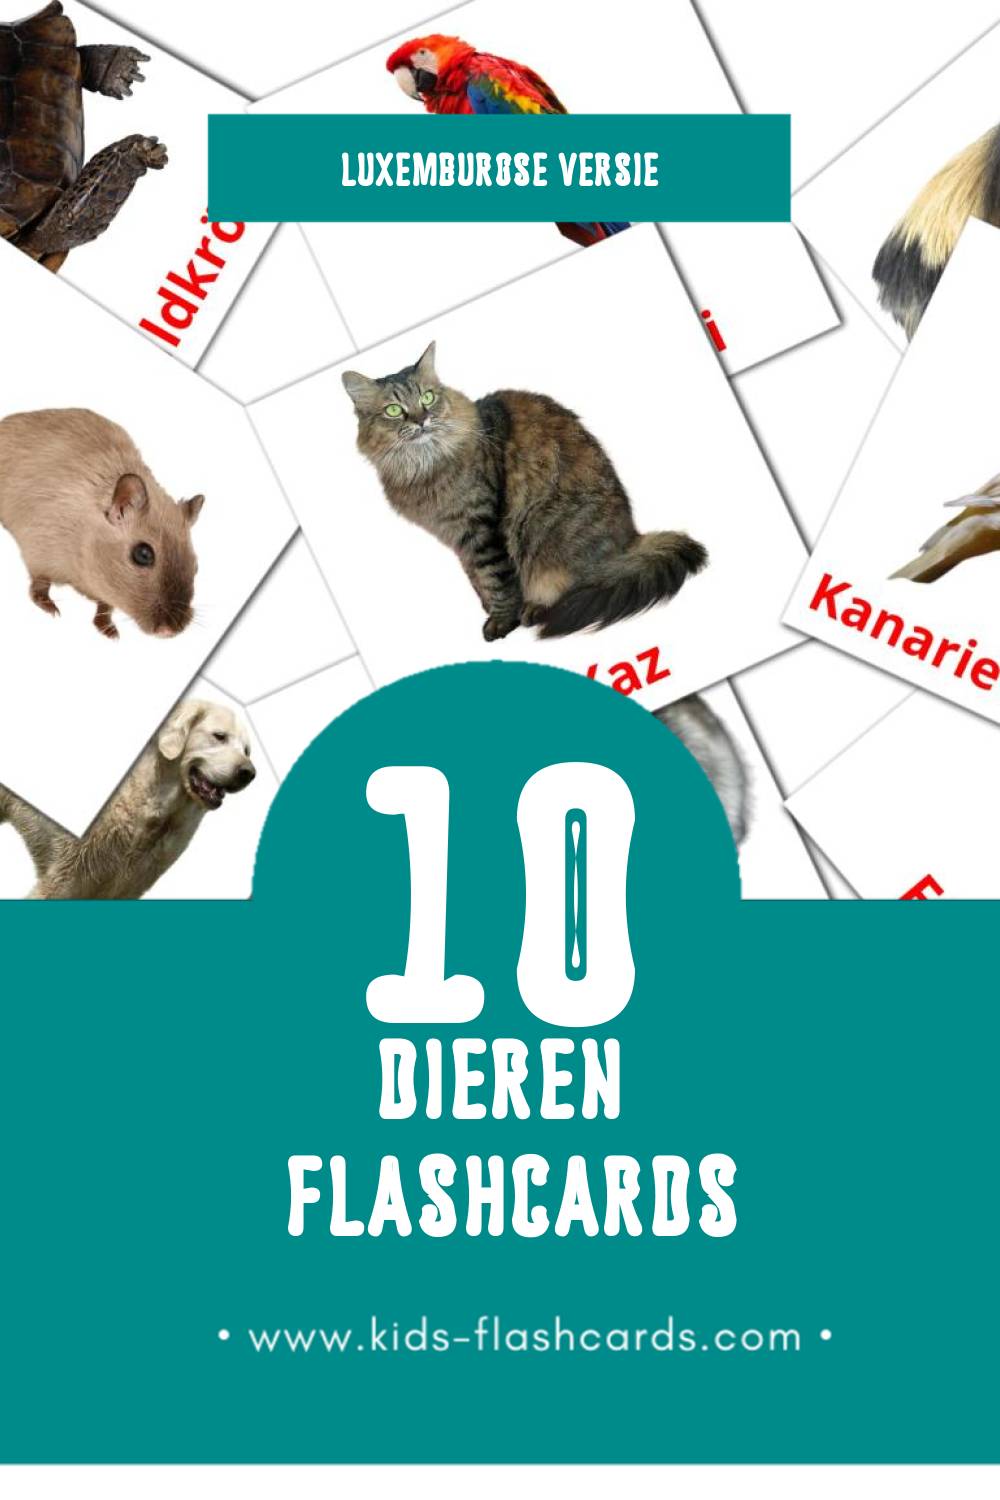 Visuele Déieren Flashcards voor Kleuters (10 kaarten in het Luxemburgs)